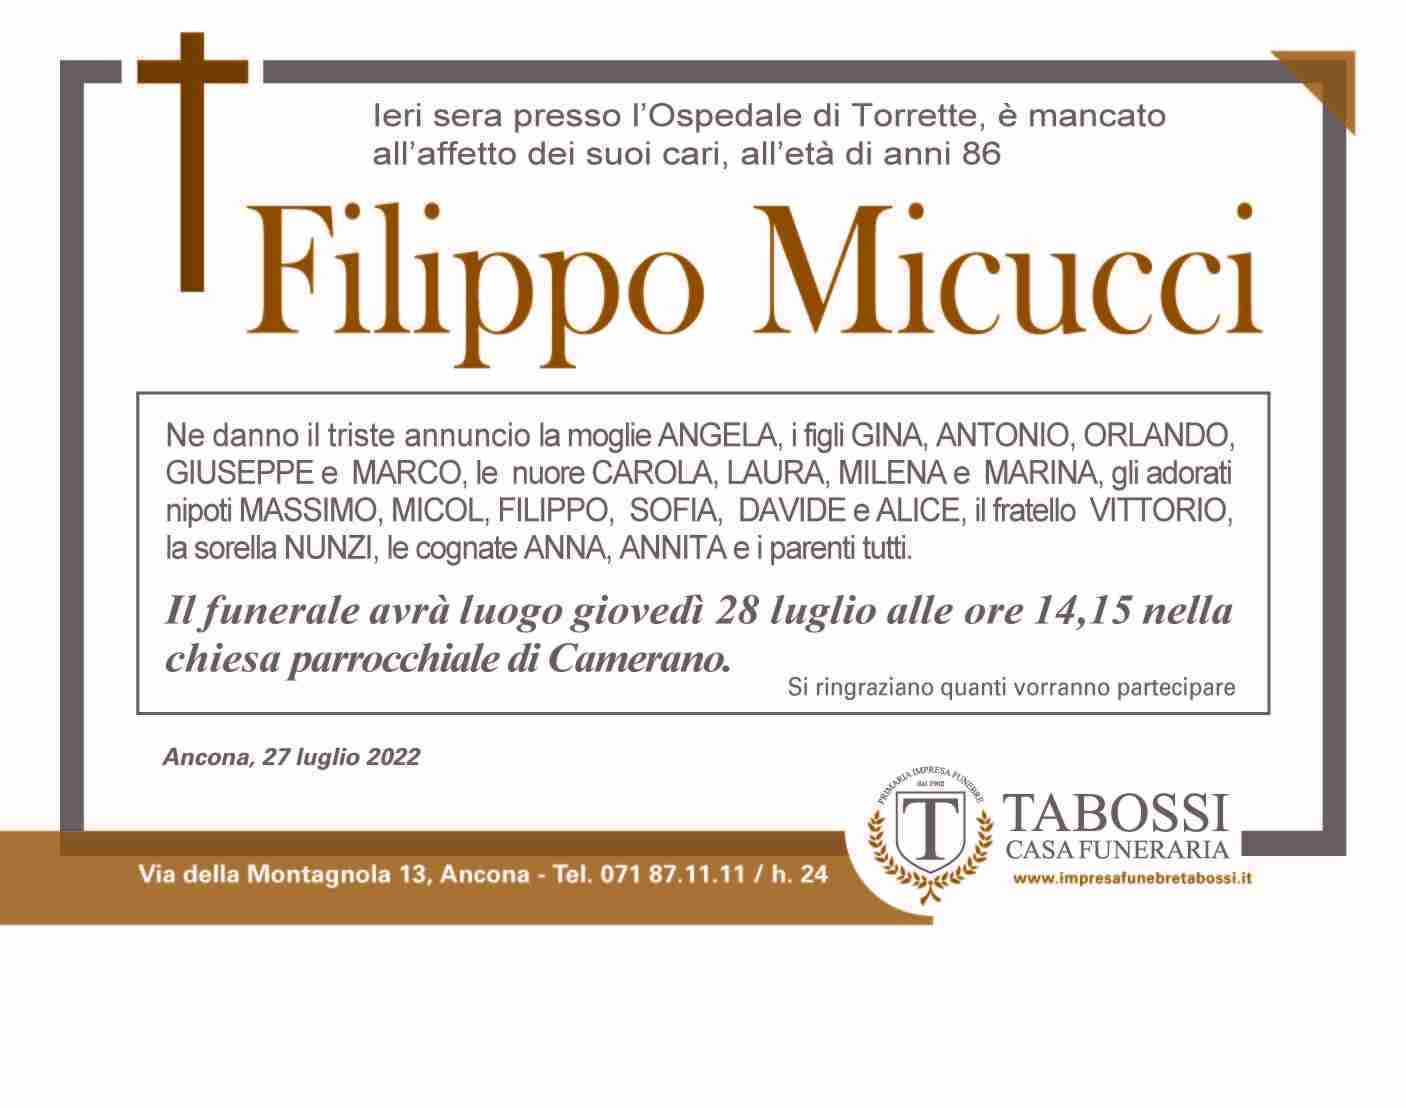 Filippo Micucci